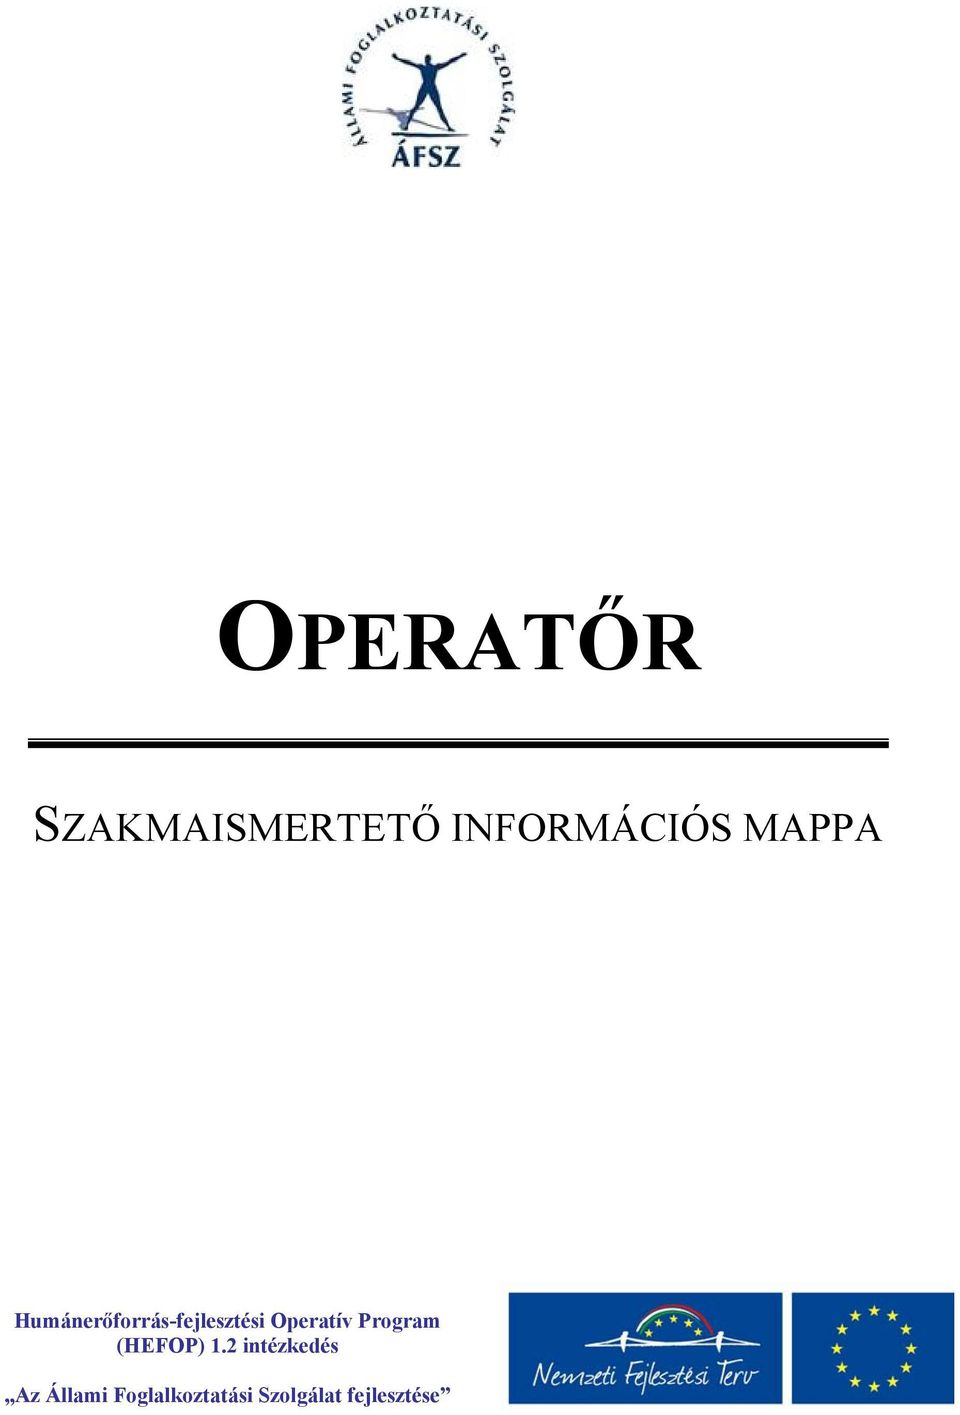 Operatív Program (HEFOP) 1.